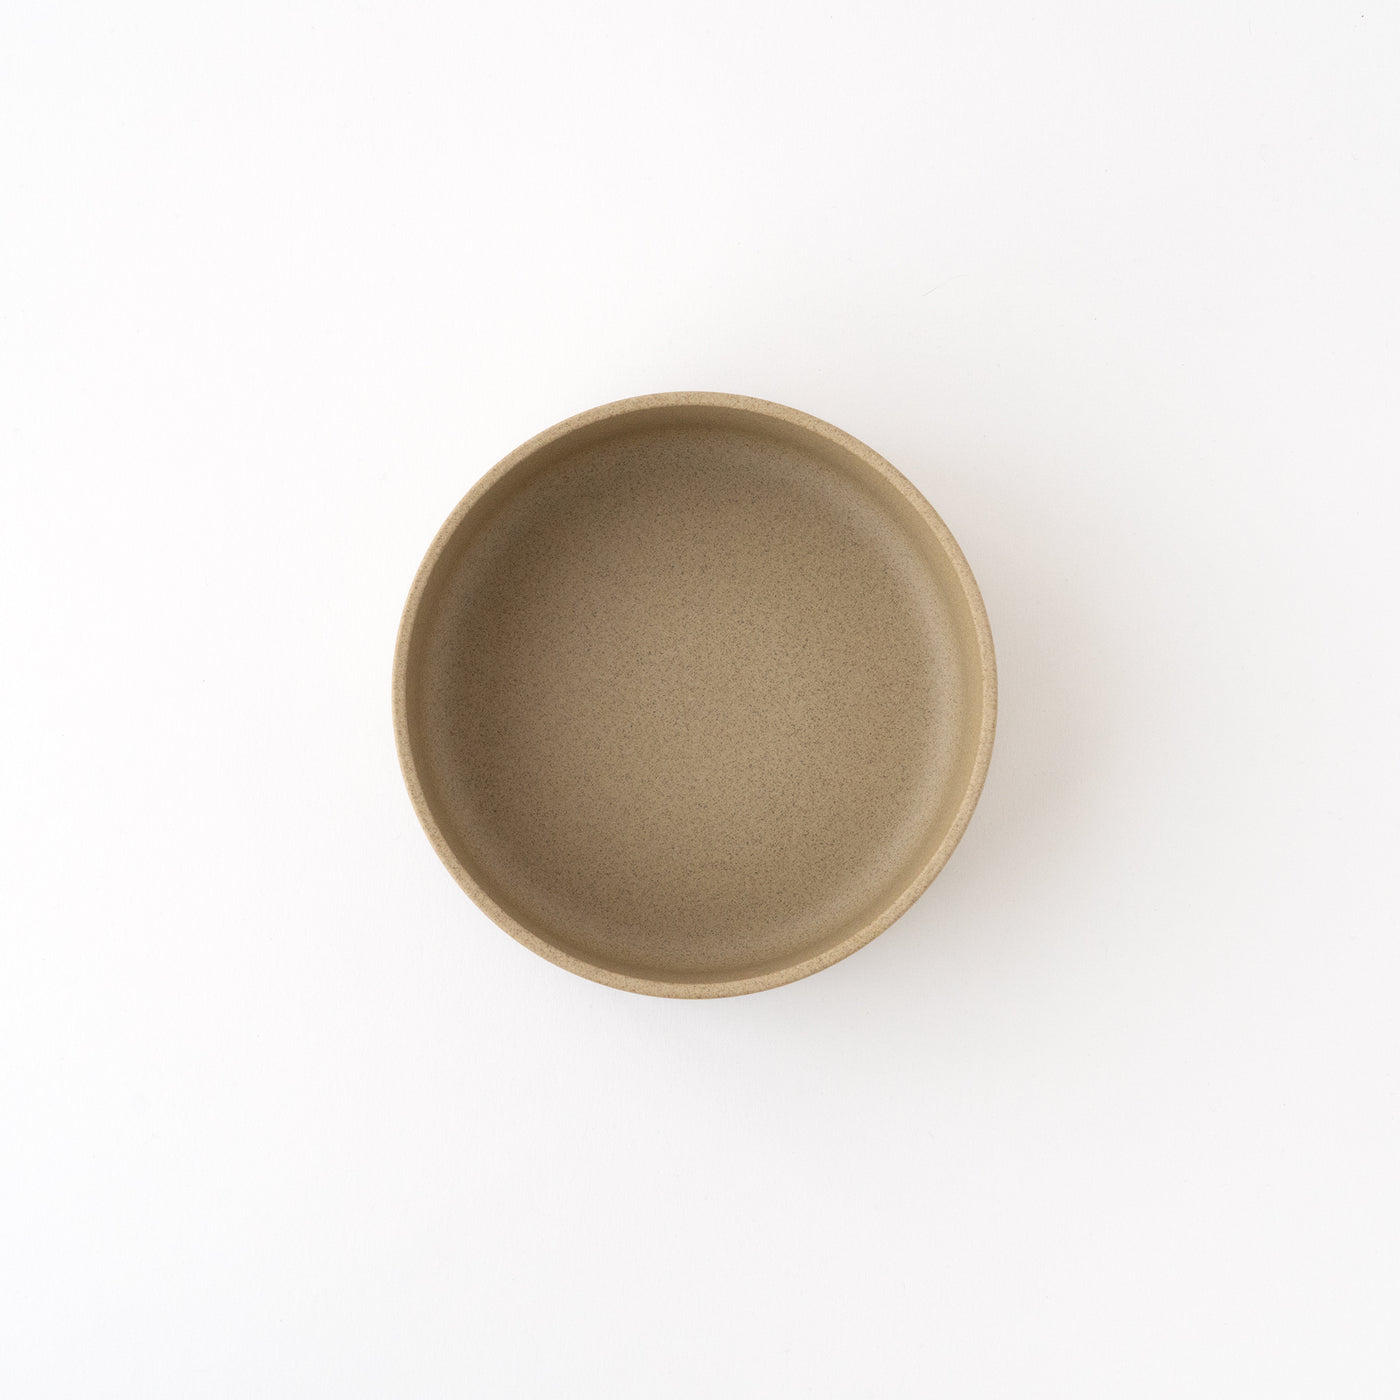 Hasami Porcelain Bowl 5 5/8" Natural